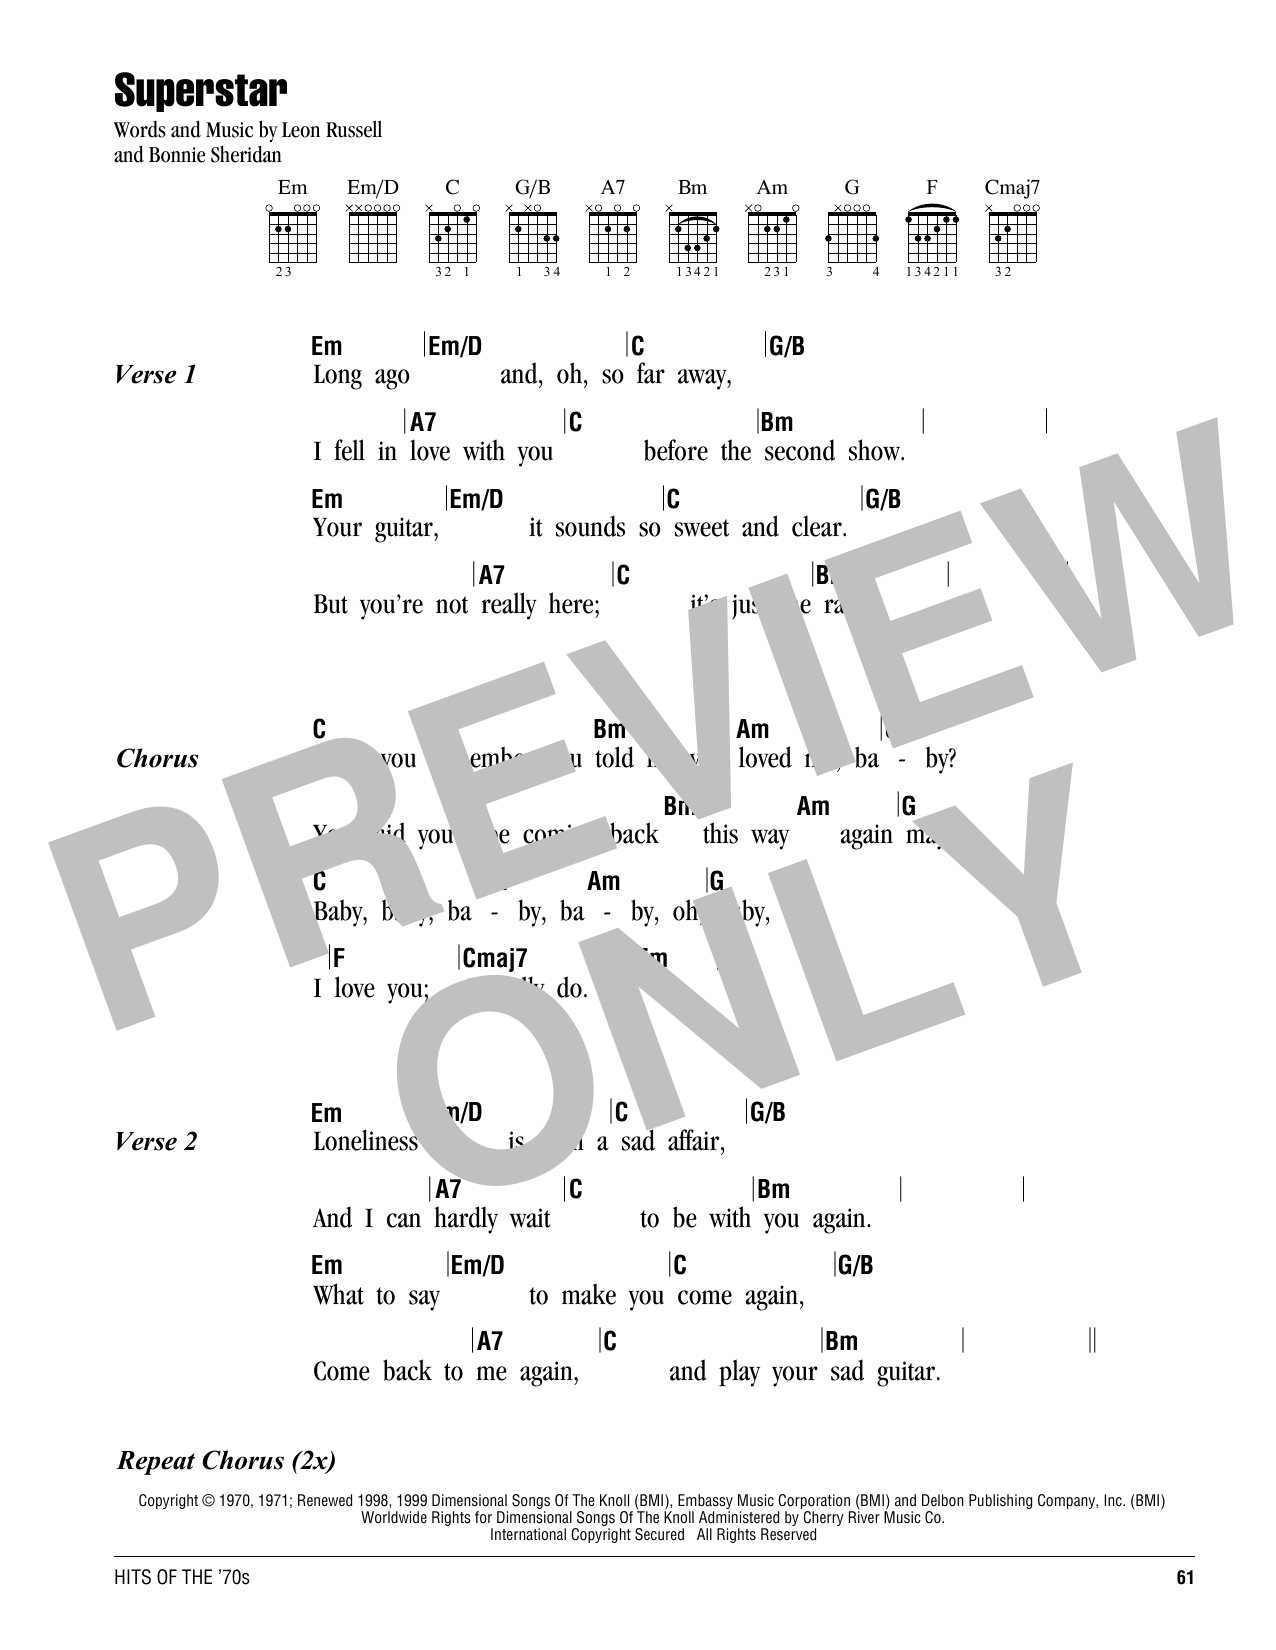 Carpenters Superstar Sheet Music Notes & Chords for Ukulele - Download or Print PDF